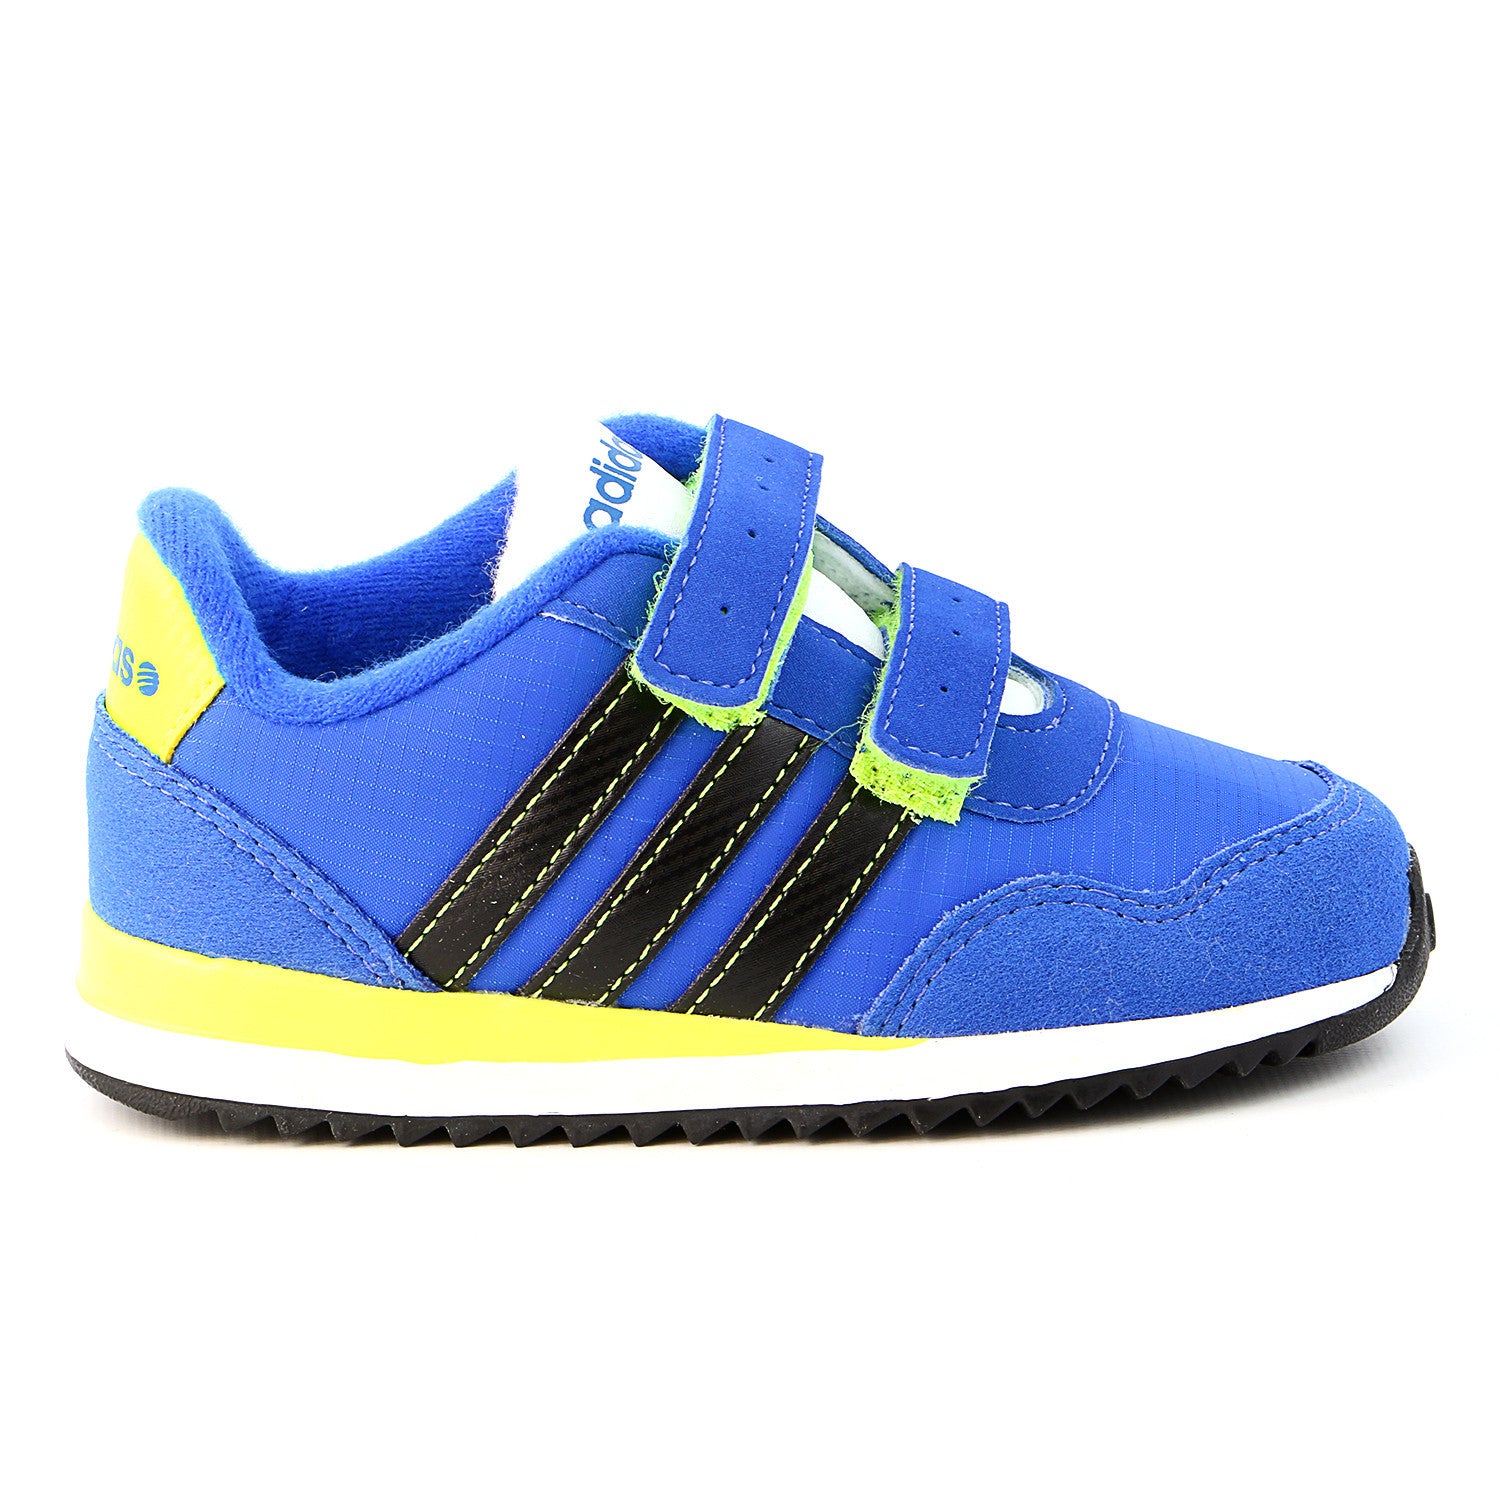 Adidas Running Shoe - Grey/White/Red Infant - Shoplifestyle